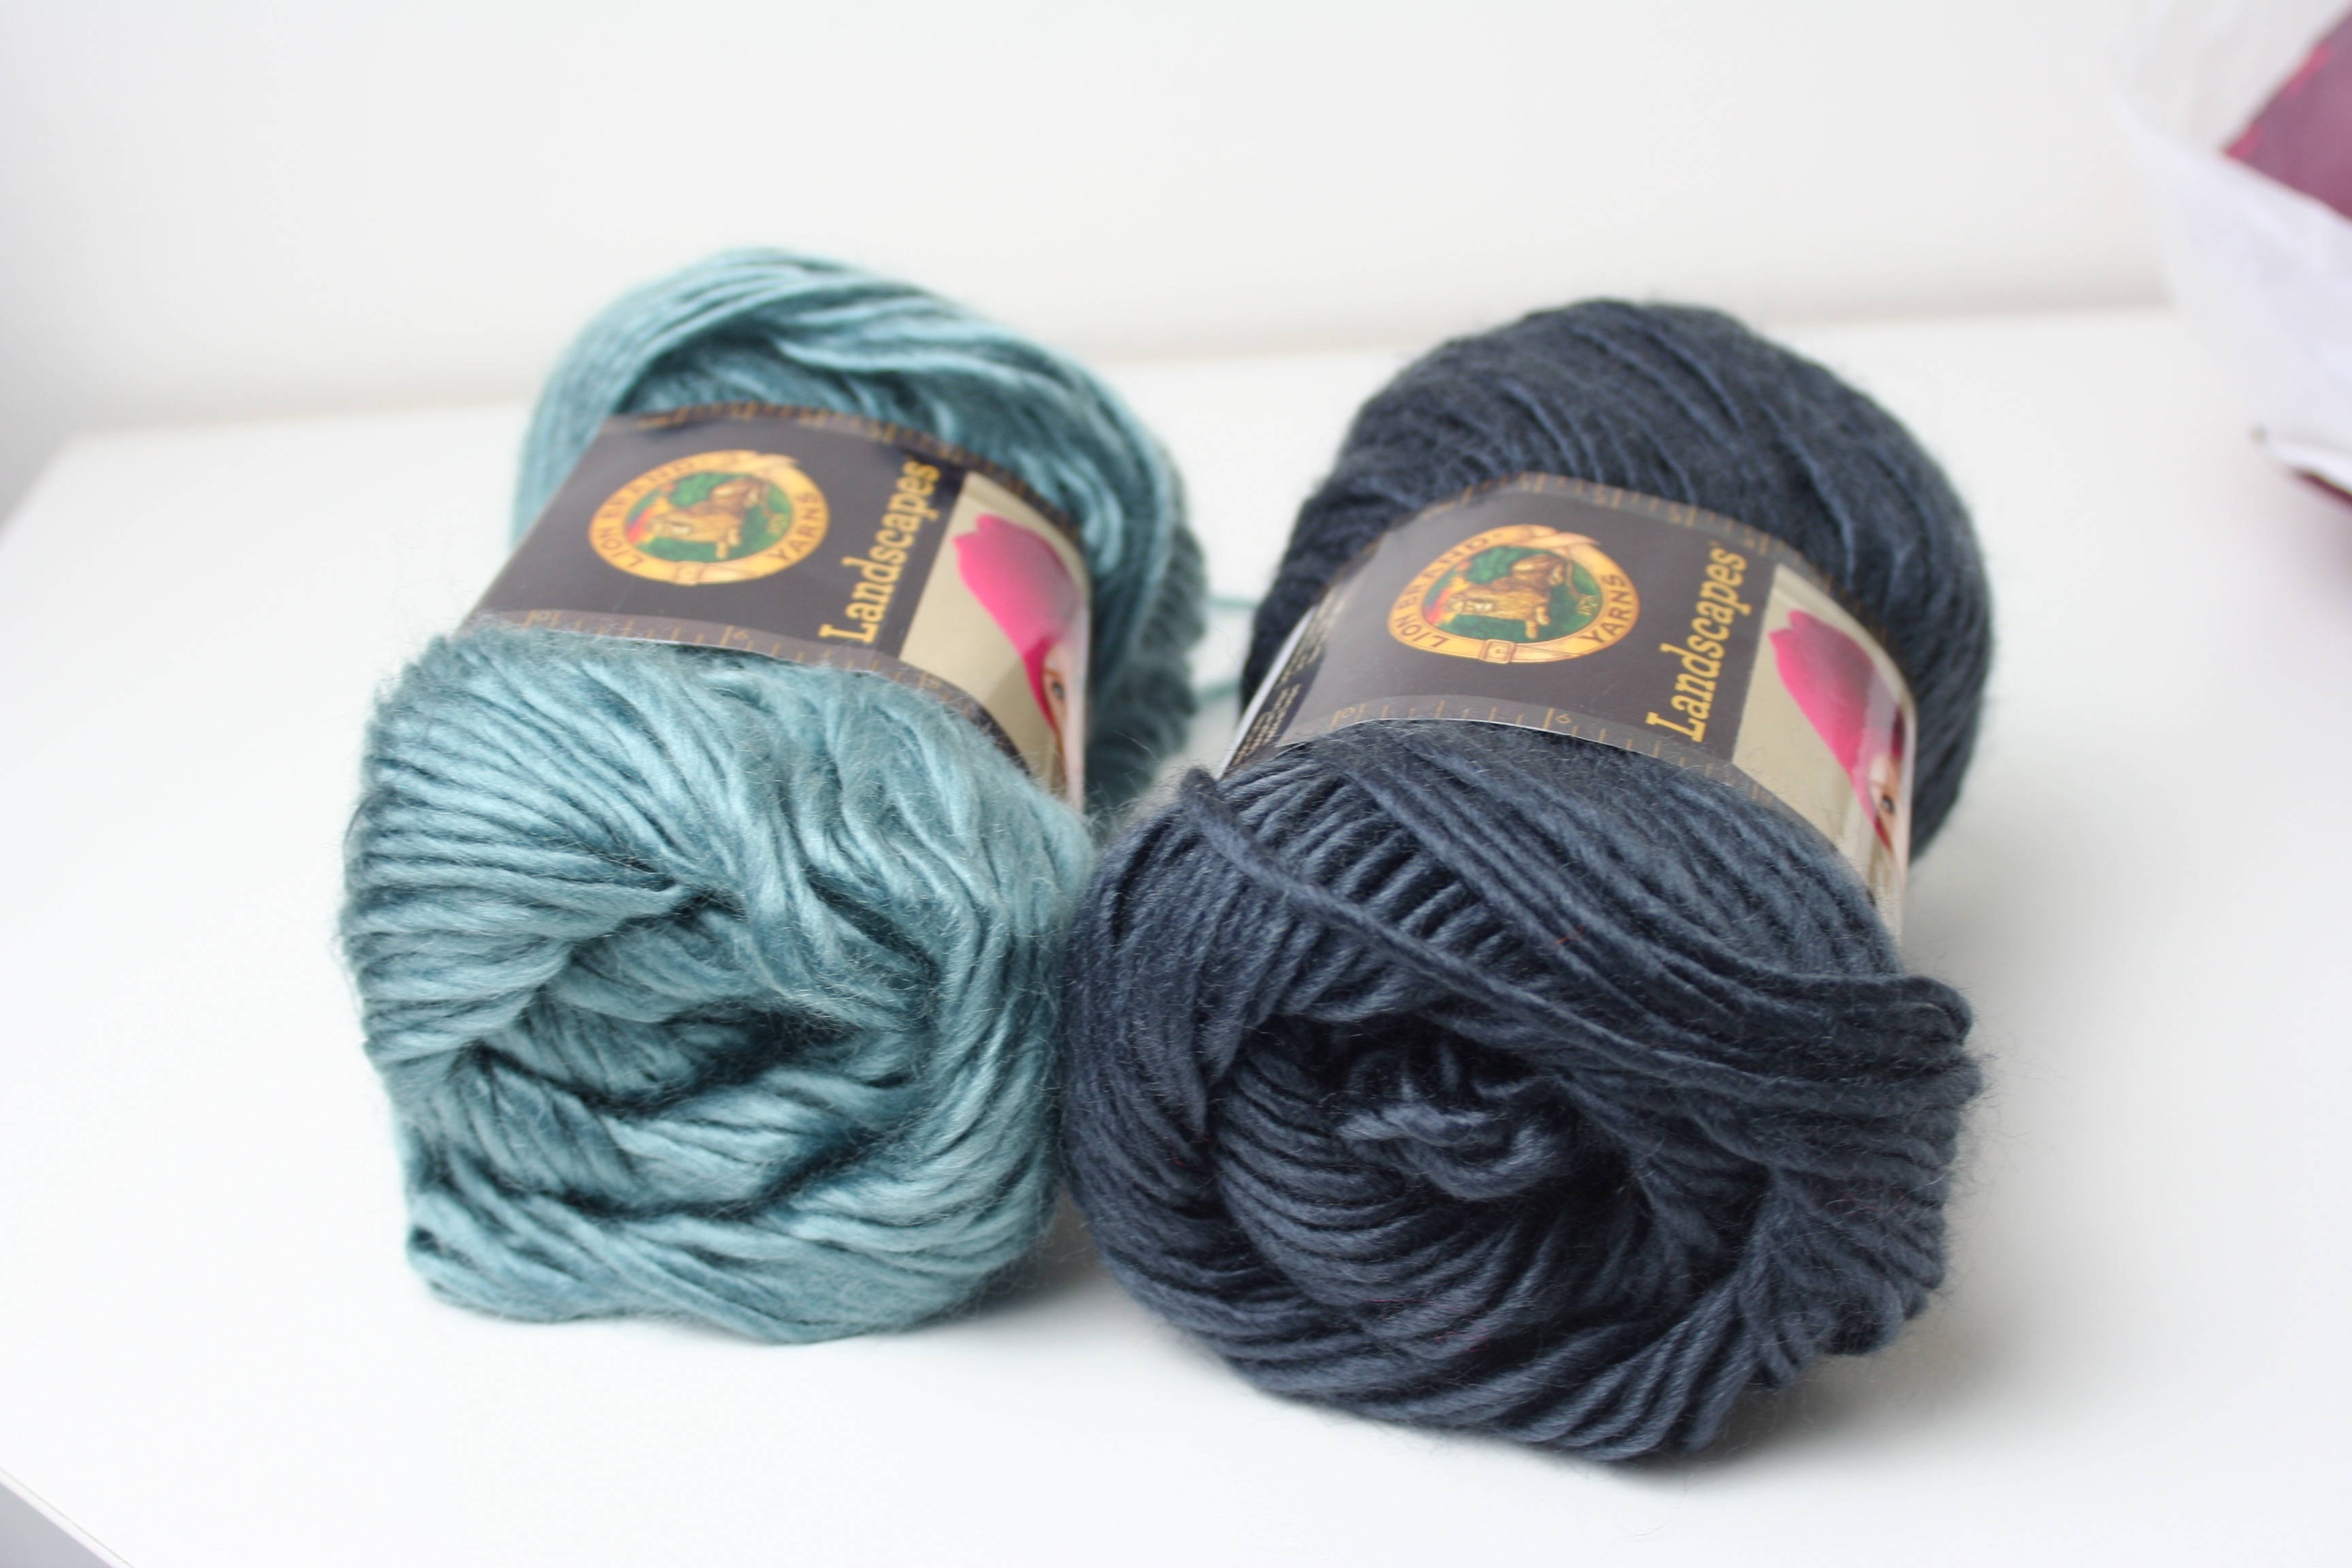 Landscapes Yarn Crochet Hat, Beginner Friendly Free Pattern